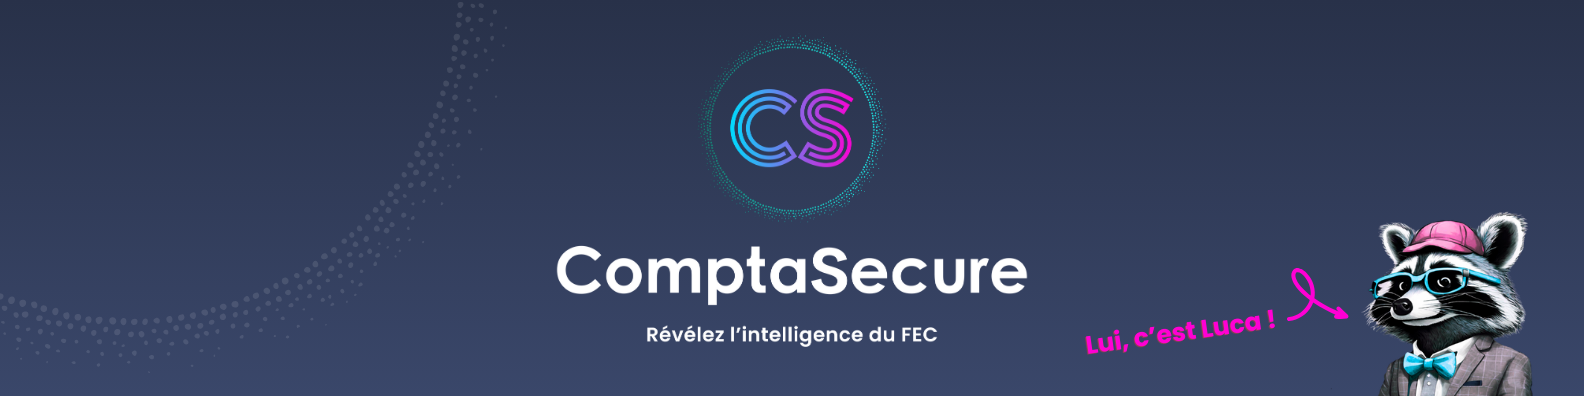 Avis ComptaSecure (ex Runview) : Révélez l'intelligence du FEC - Appvizer